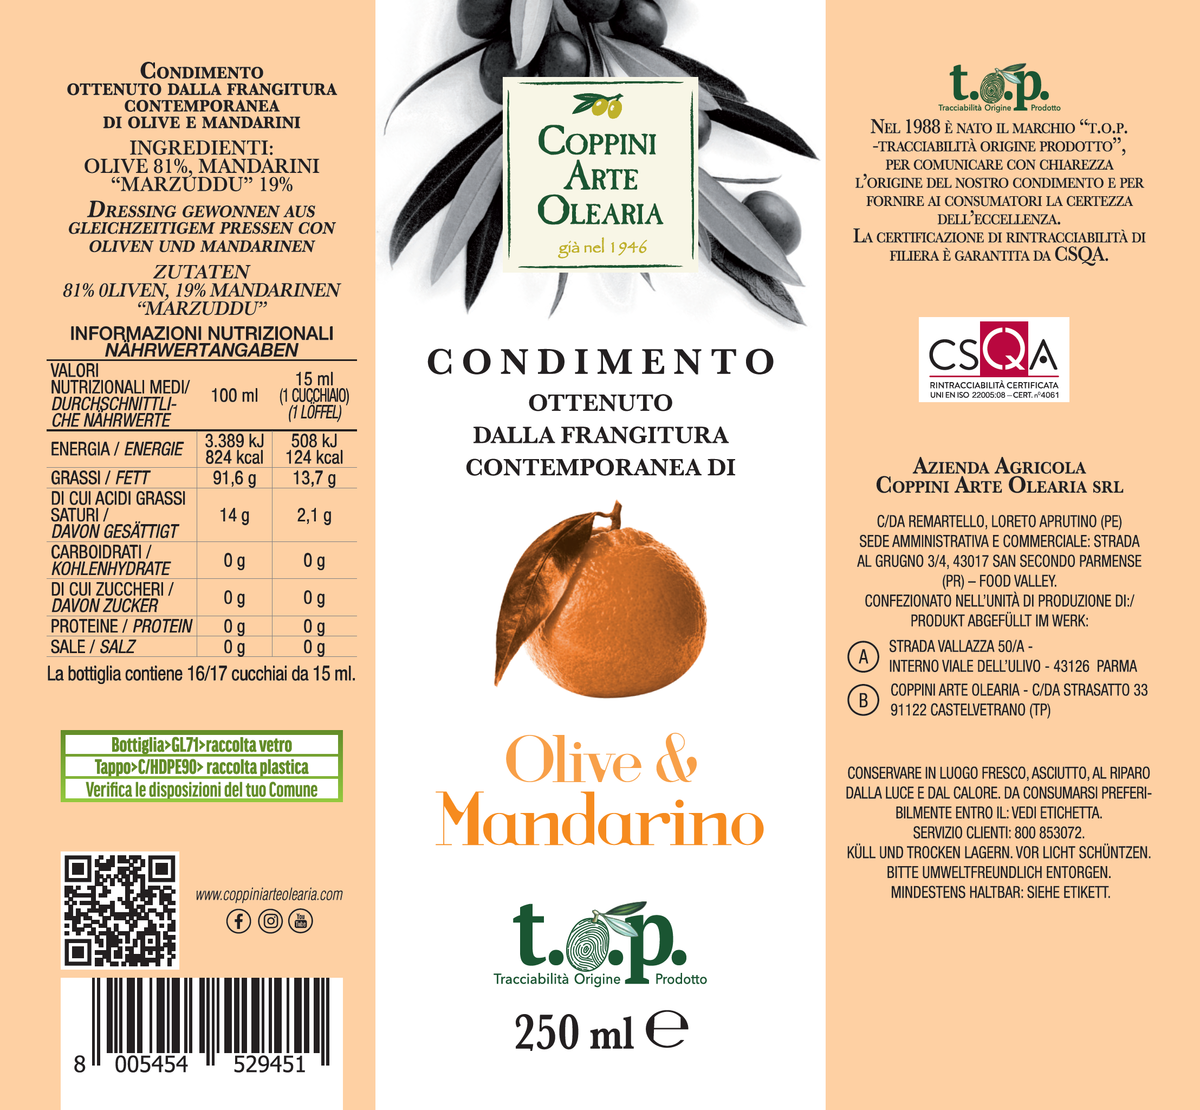 Etichetta Condimento Olio Evo e Mandarino di Coppini Arte Olearia